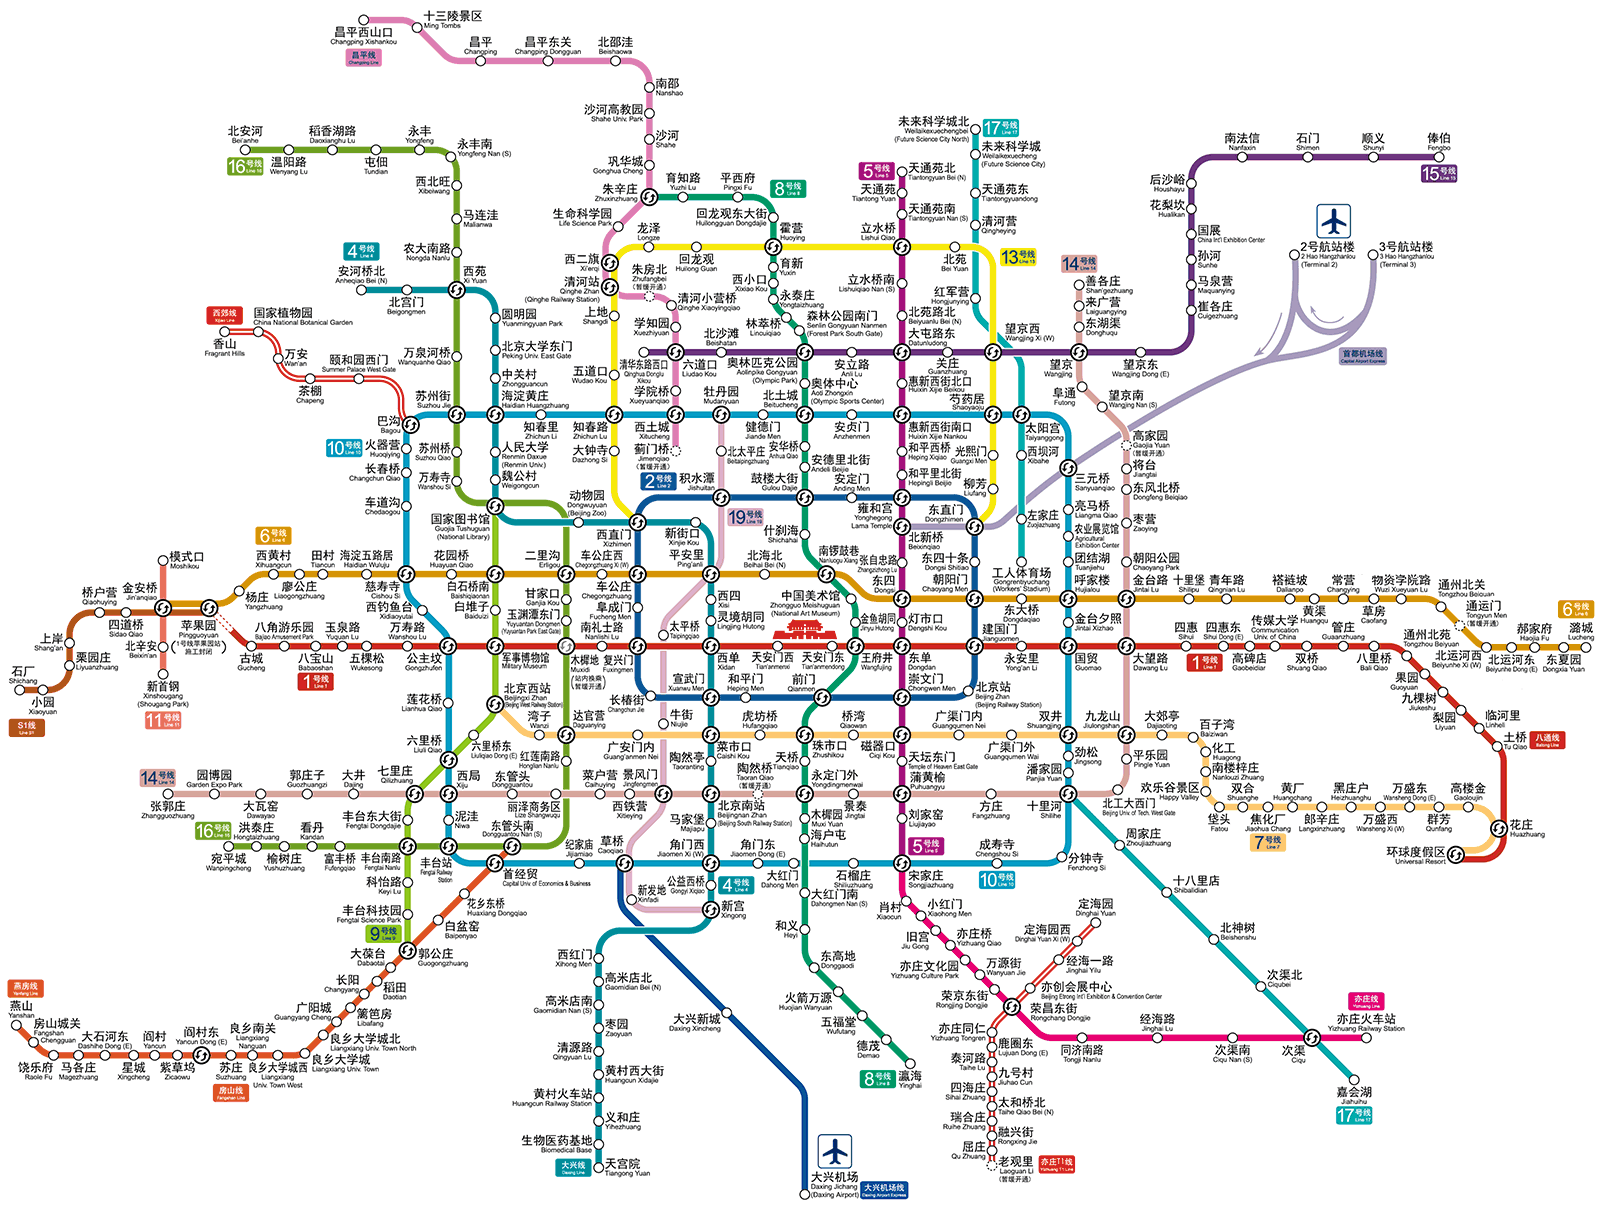 Beijing subway map